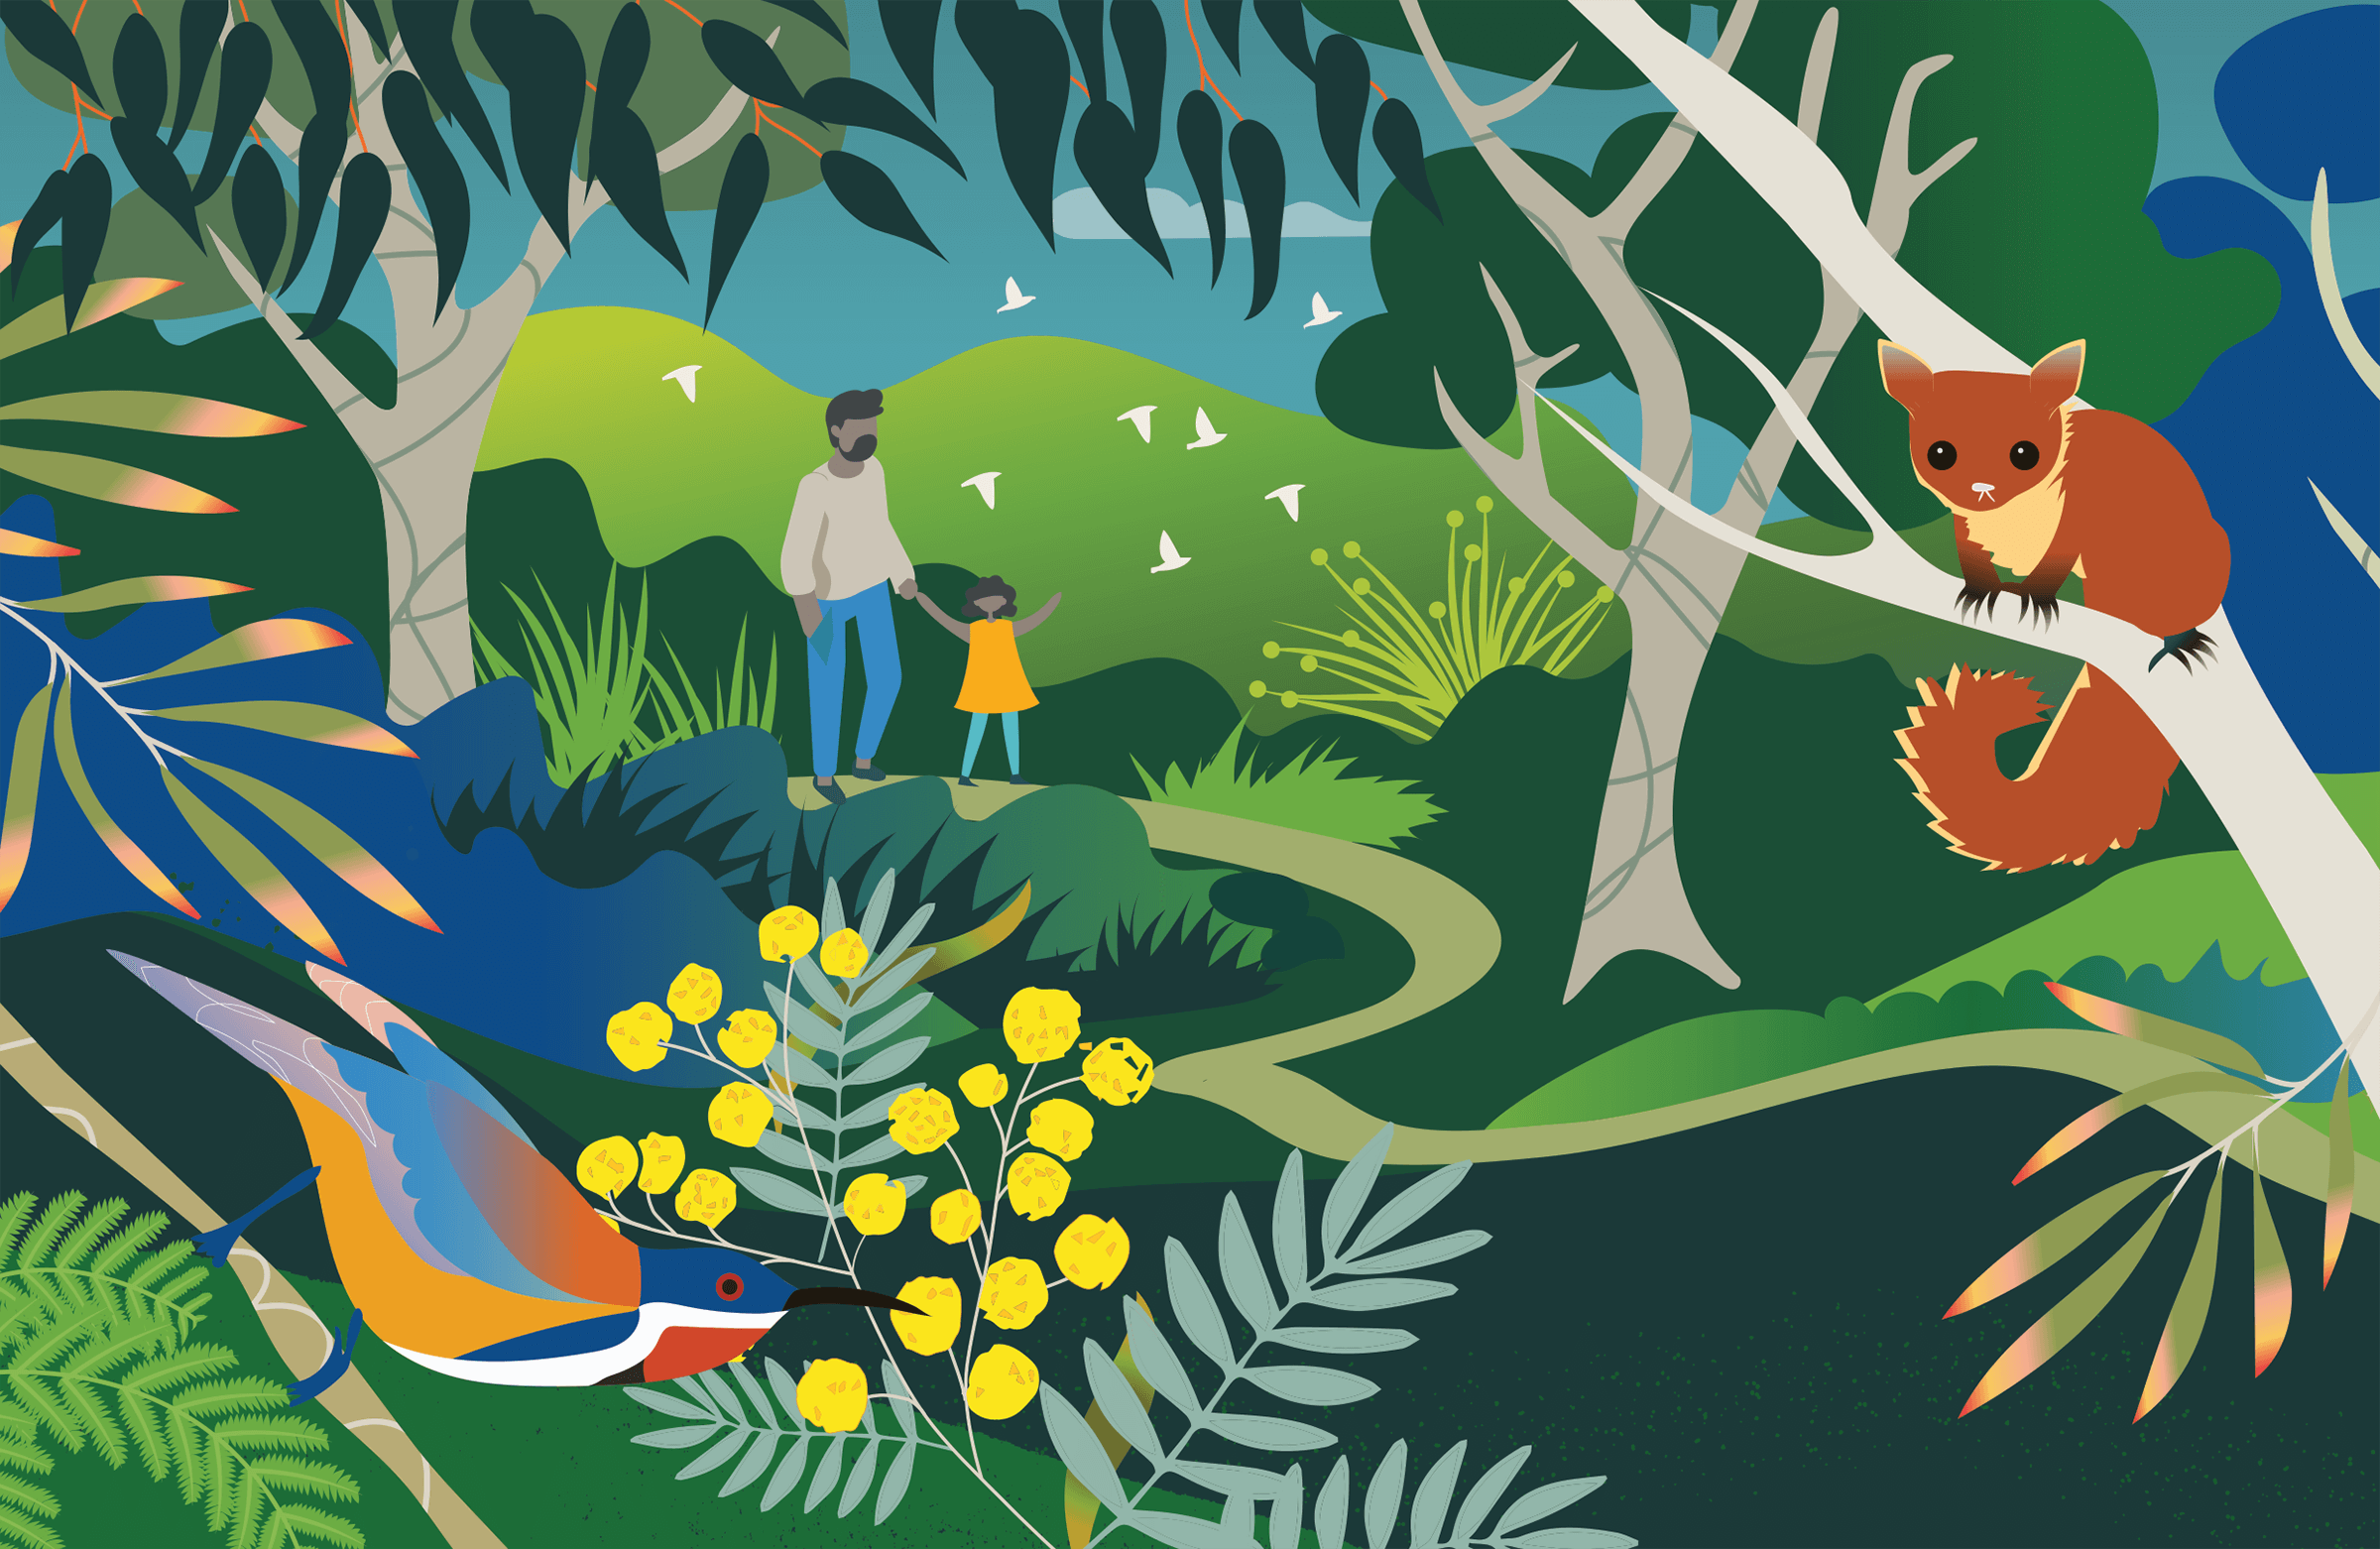 Stylised illustration of two people walking through lush bushland, surrounded by animals.